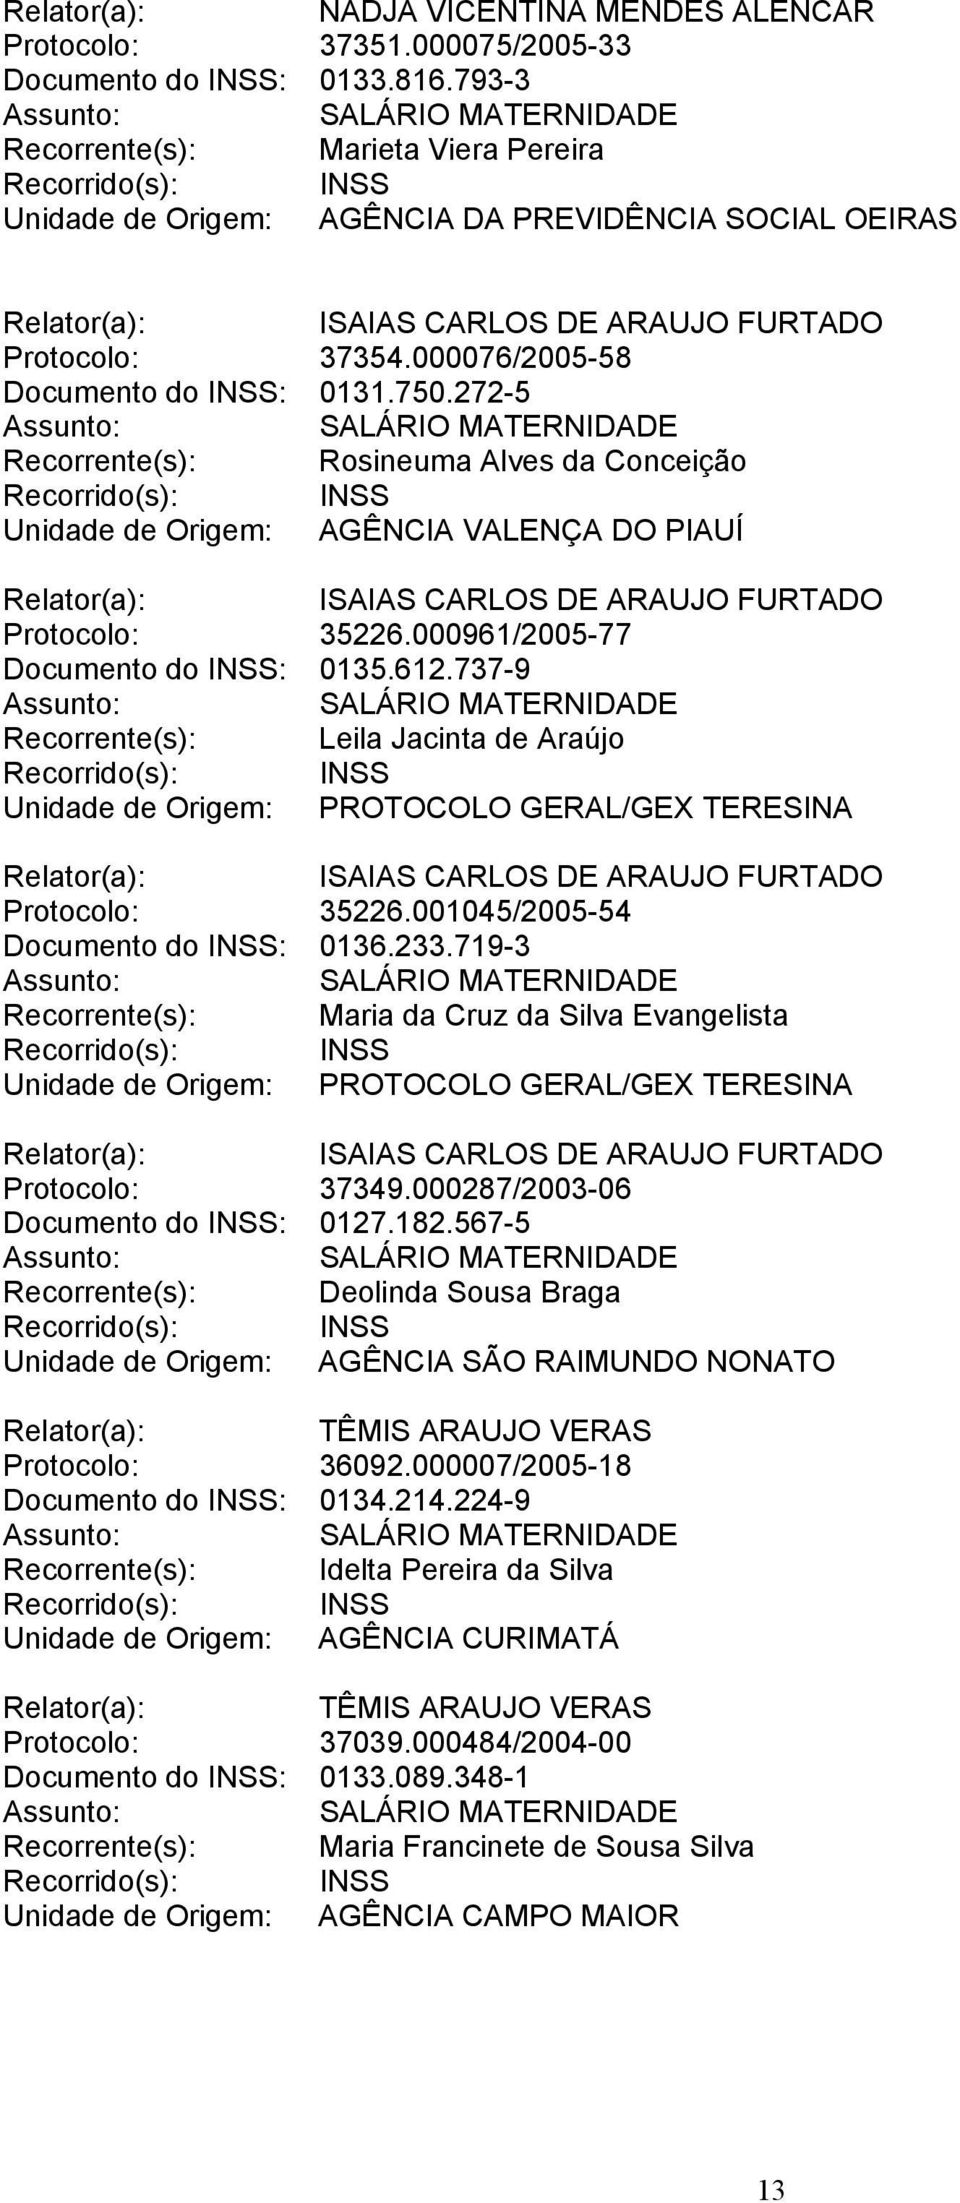 001045/2005-54 Documento do INSS: 0136.233.719-3 Recorrente(s): Maria da Cruz da Silva Evangelista Protocolo: 37349.000287/2003-06 Documento do INSS: 0127.182.